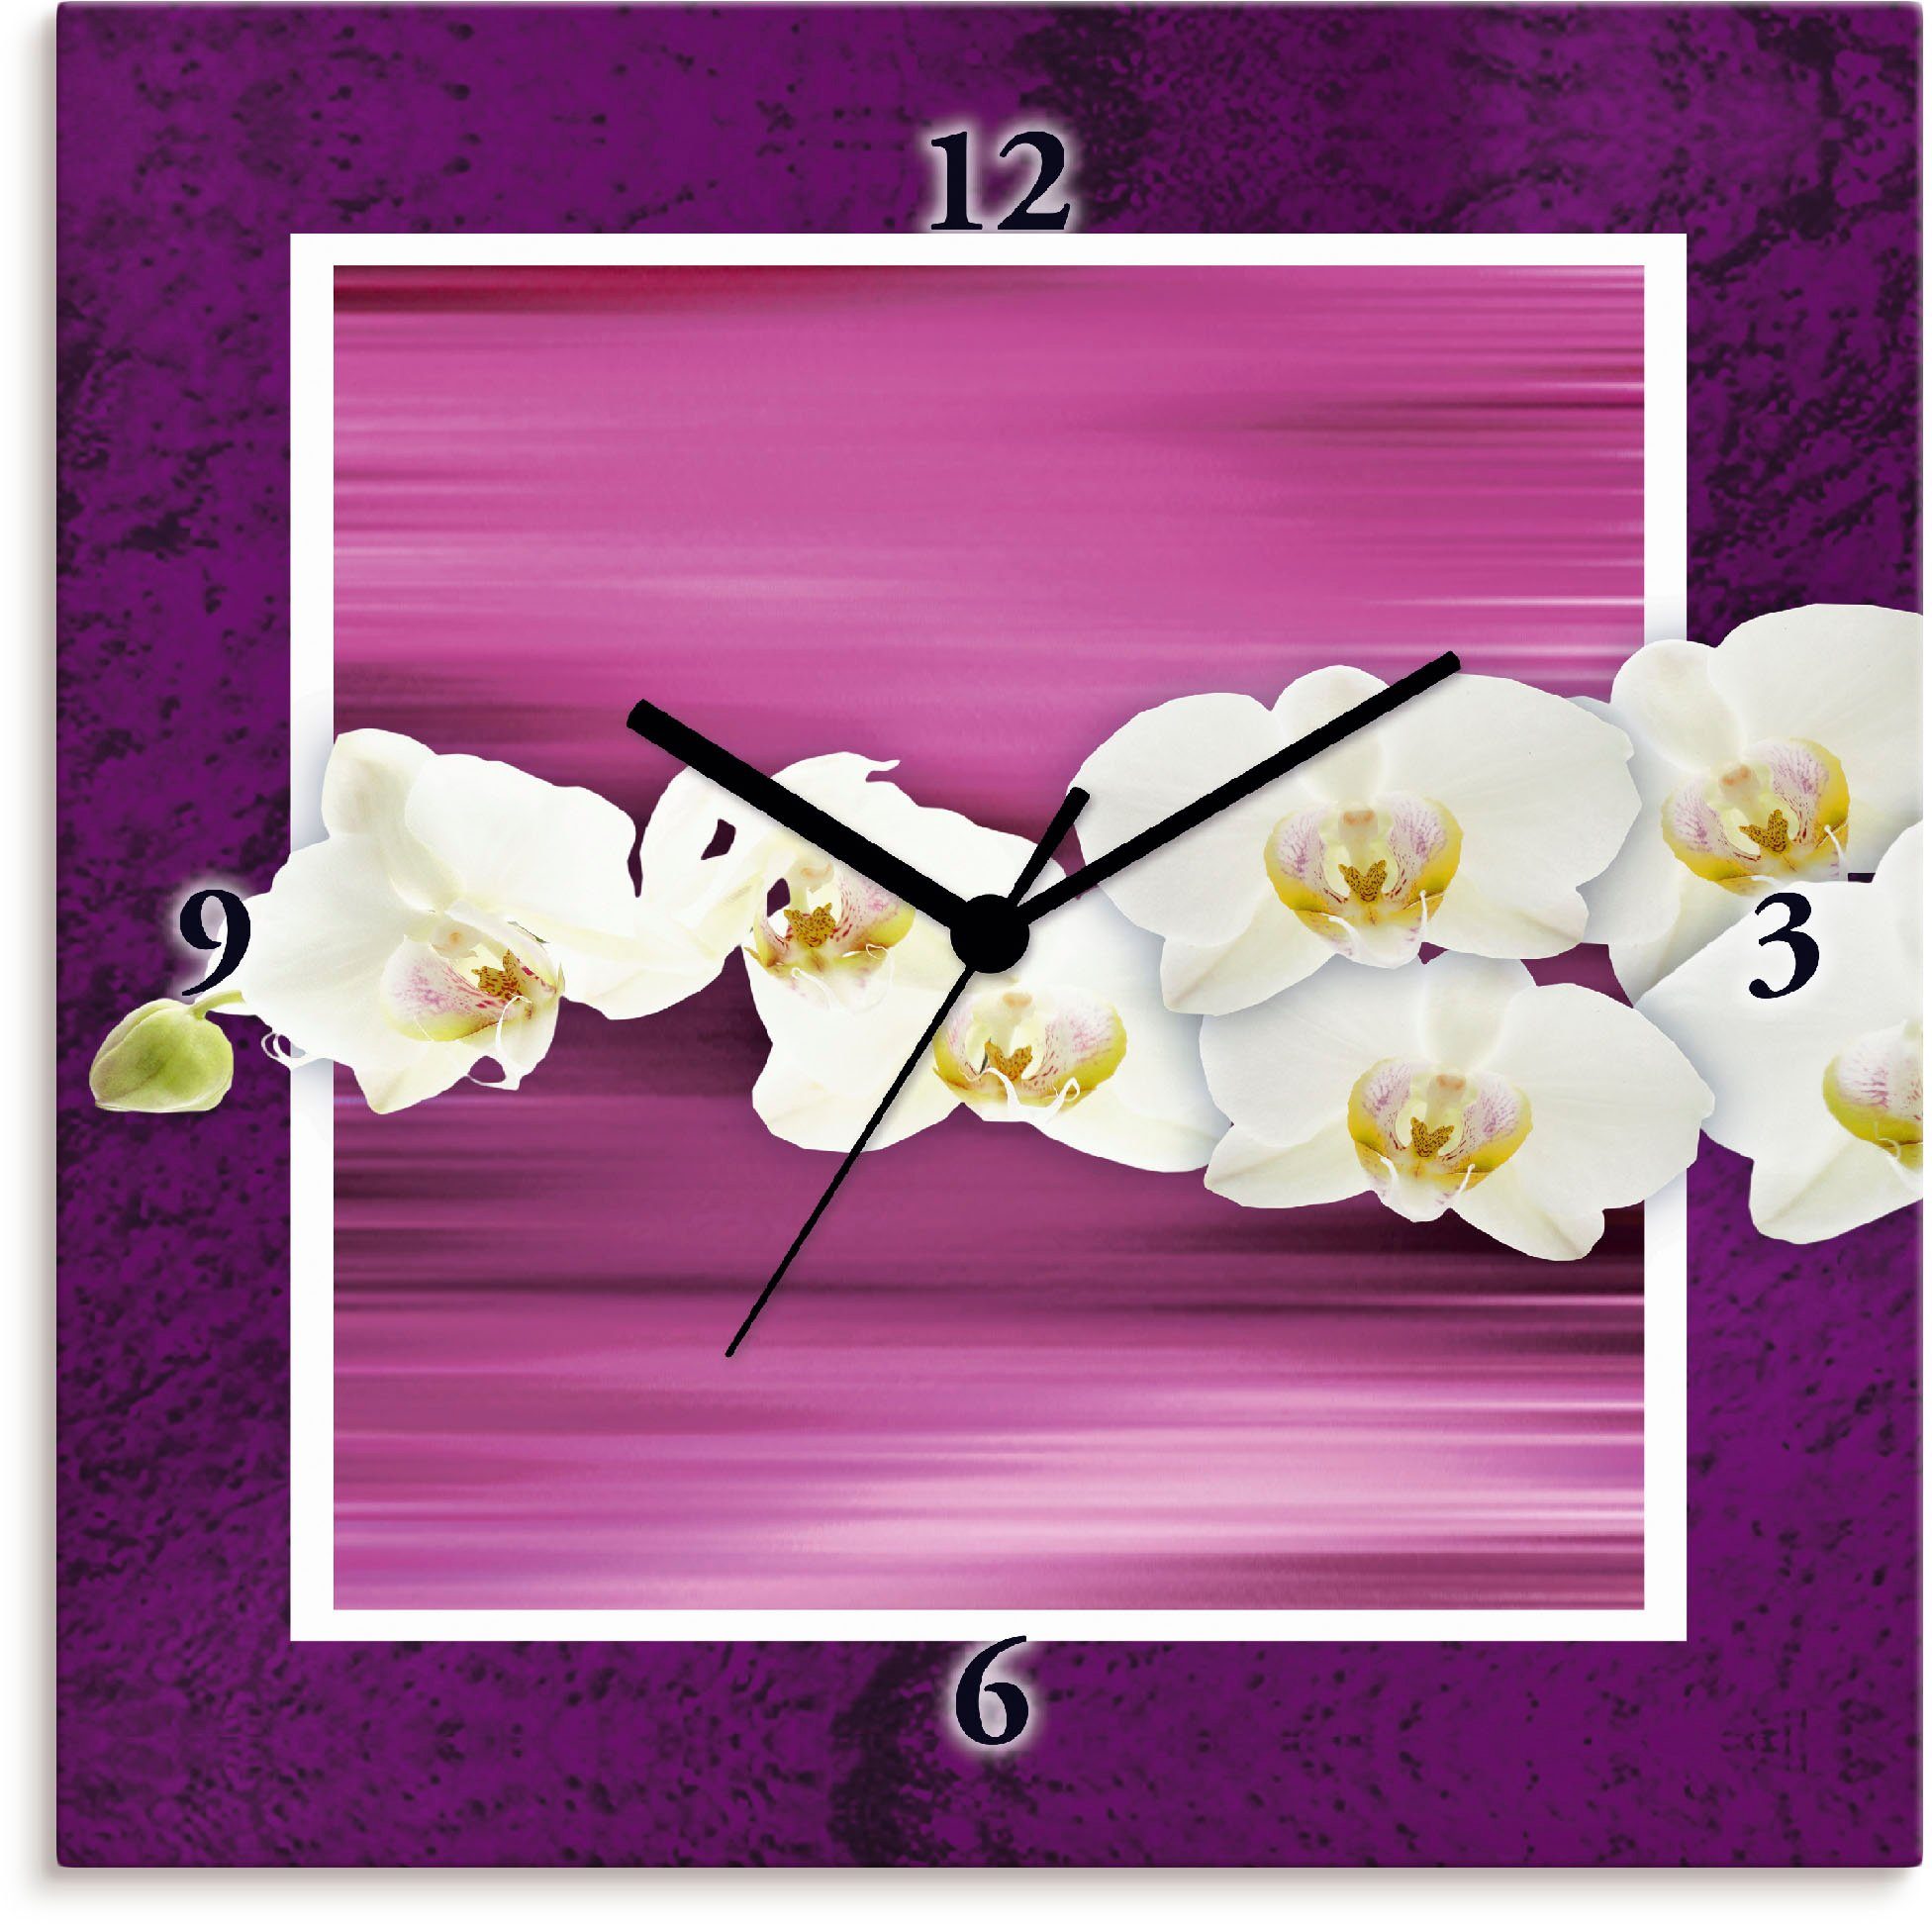 Artland Wandklok Orchideeën - violet geluidloos, zonder tikkende geluiden, niet tikkend, geruisloos - naar keuze: radiografische klok of kwartsklok, moderne klok voor woonkamer, ke